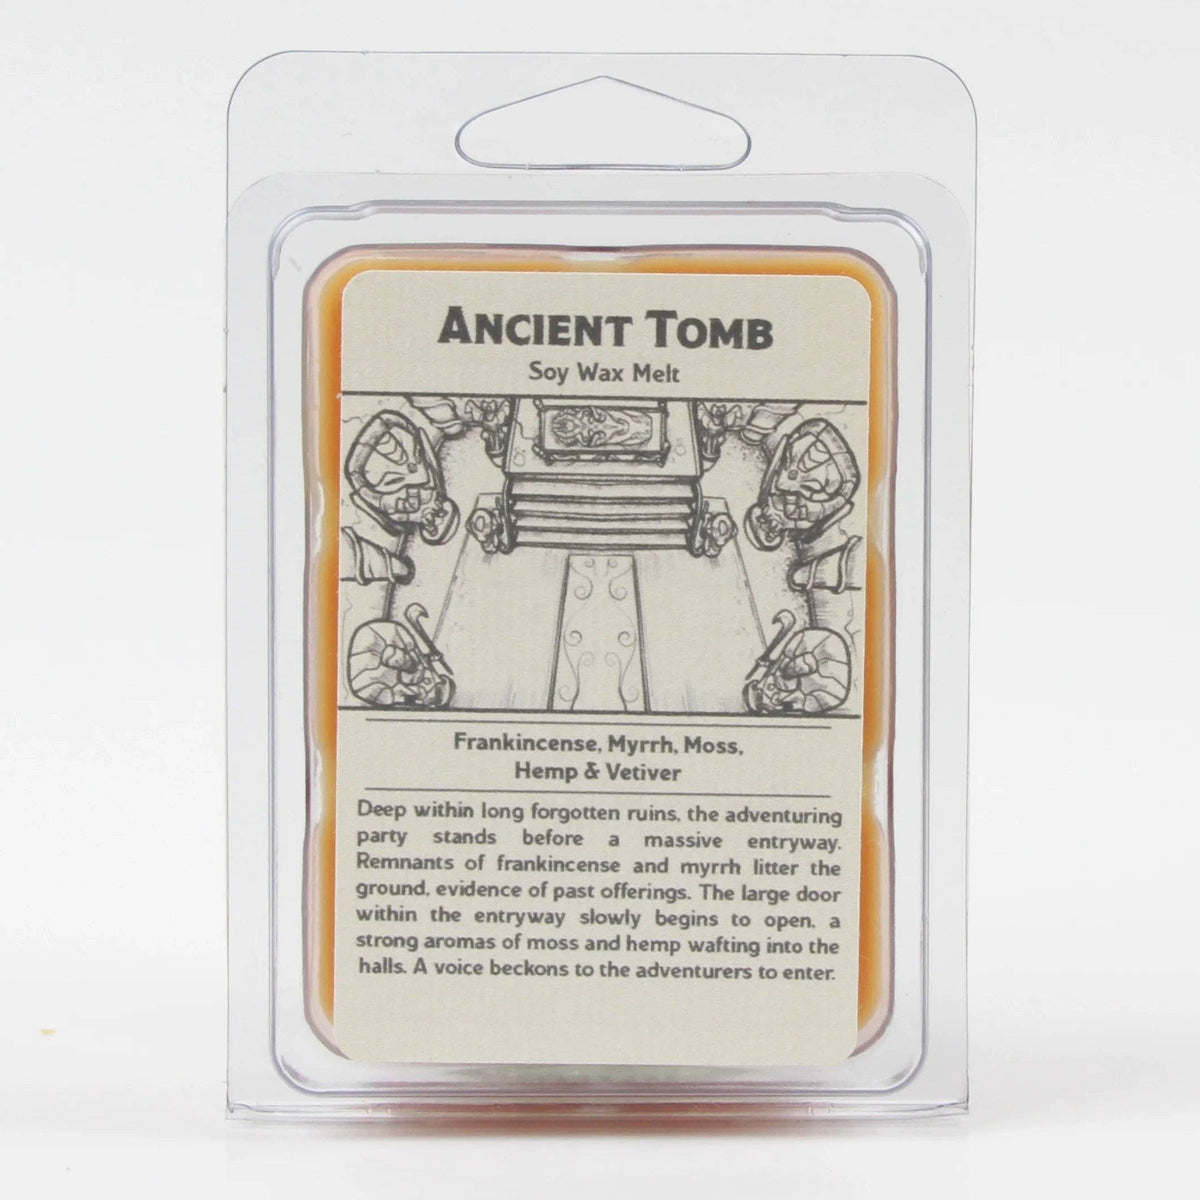 Ancient Tomb - Wax Melt